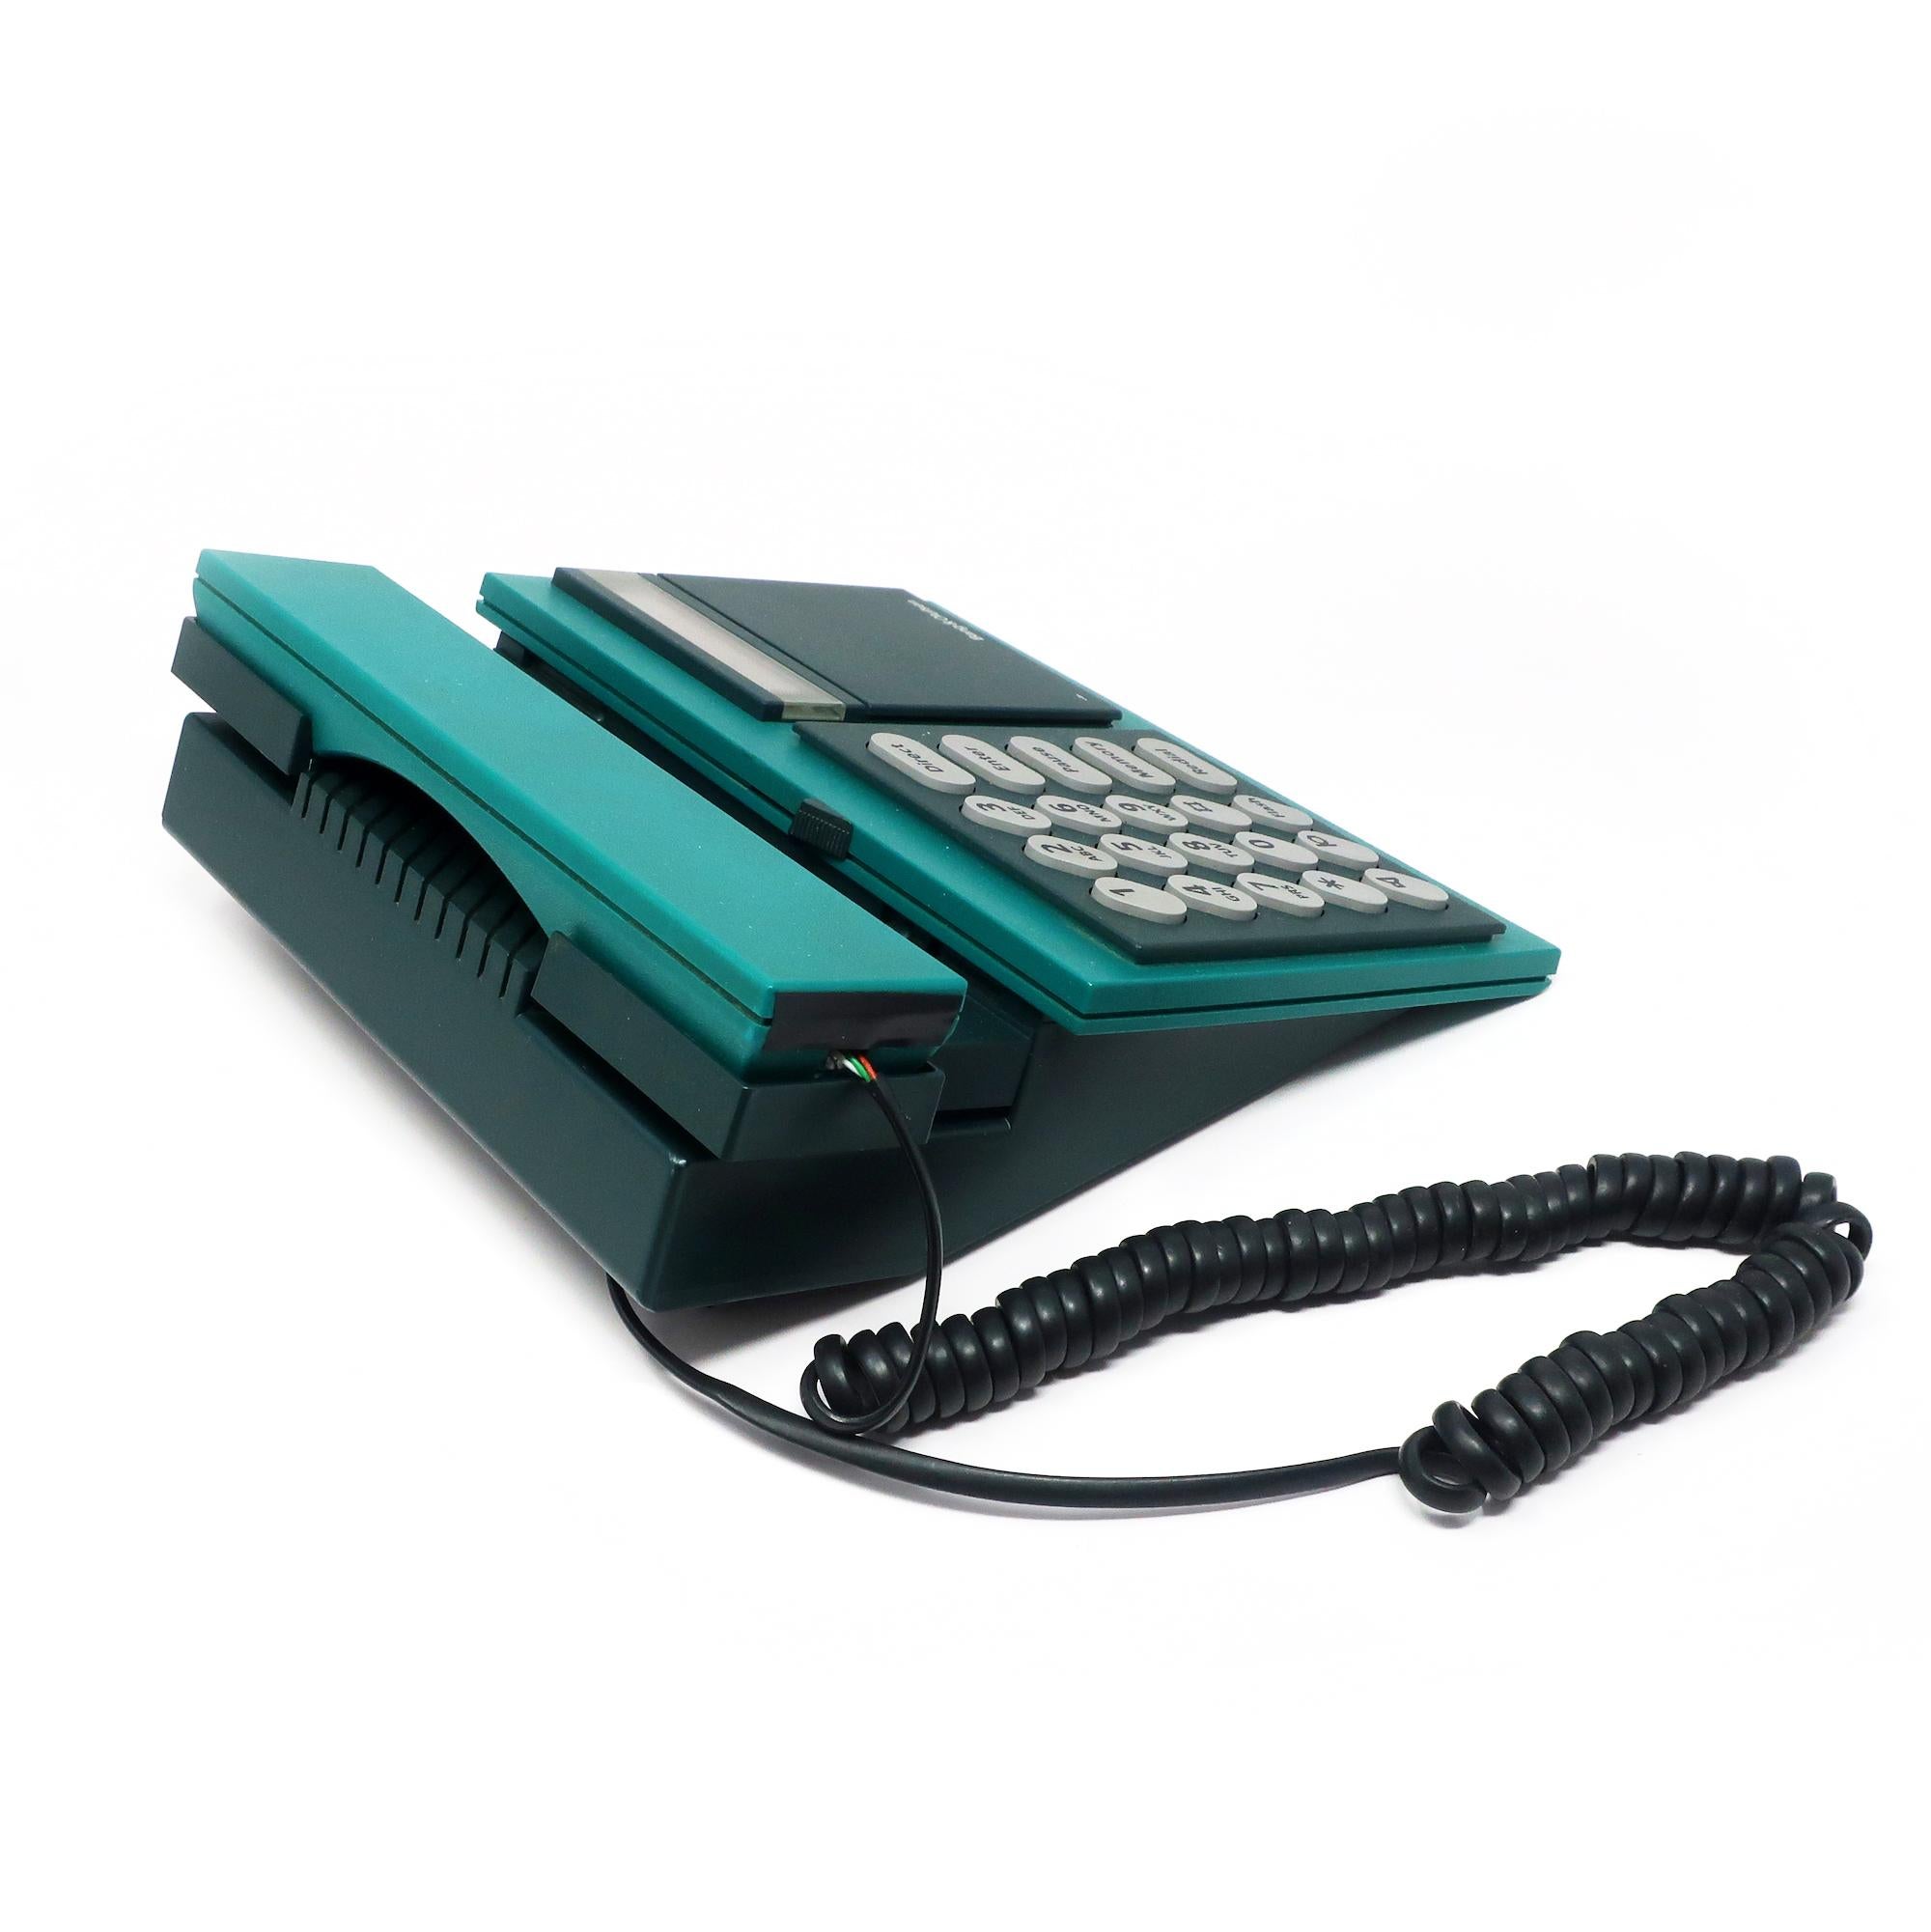 Plastique téléphone Beocom 2000 Bang & Olufsen des années 1980 en vente